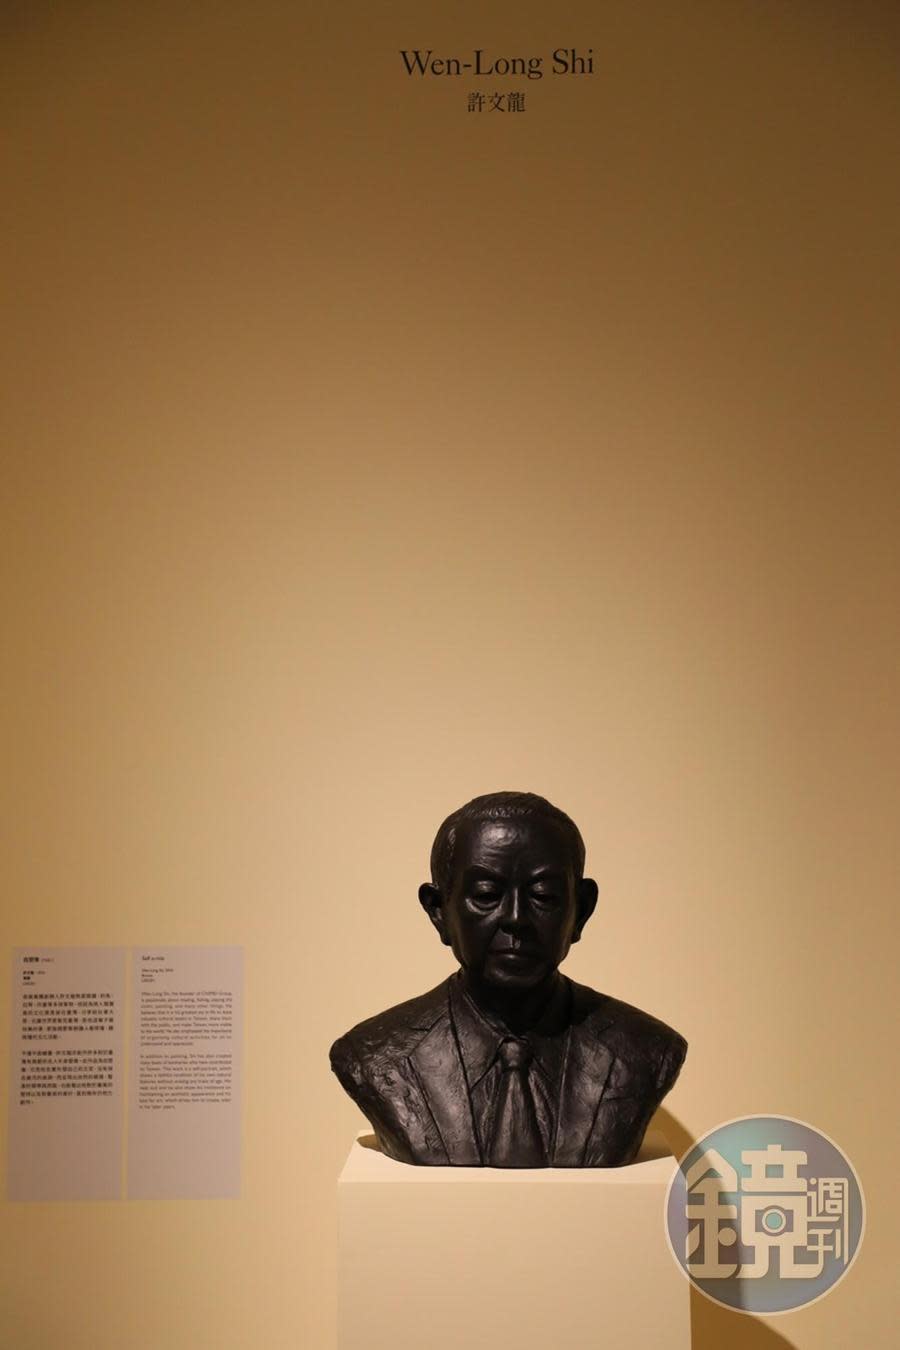 展覽尾聲展出奇美博物館創辦人許文龍先生自己創作的自塑像，彷如在跟看完展覽的人們親切地Say Good Bye。